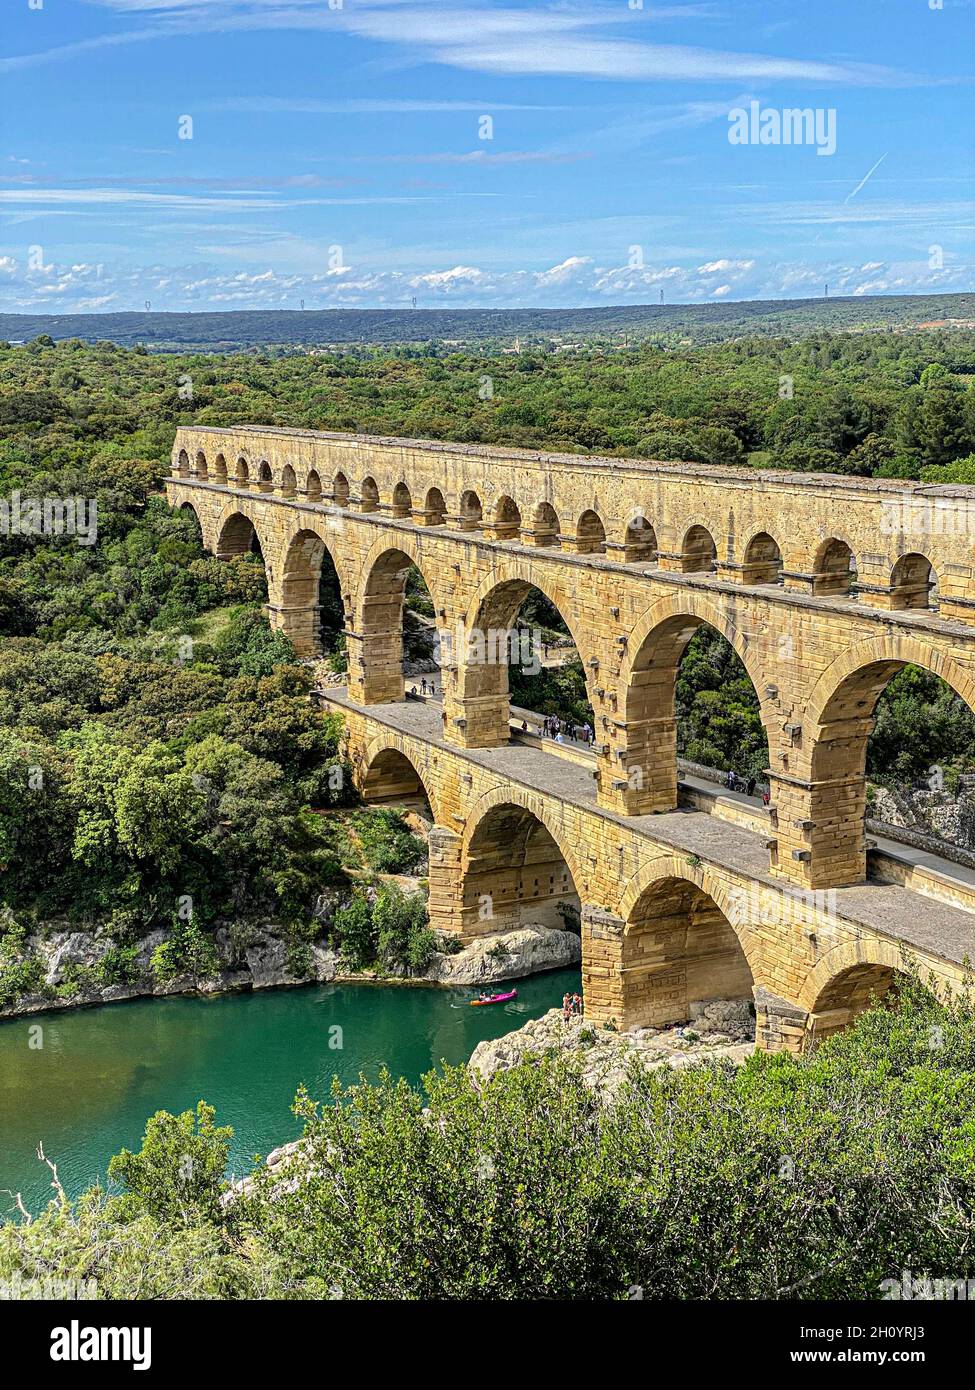 Römisches Aquädukt durch Laub gesehen, Pont-du-Gard, Languedoc-Roussillon Frankreich Stockfoto